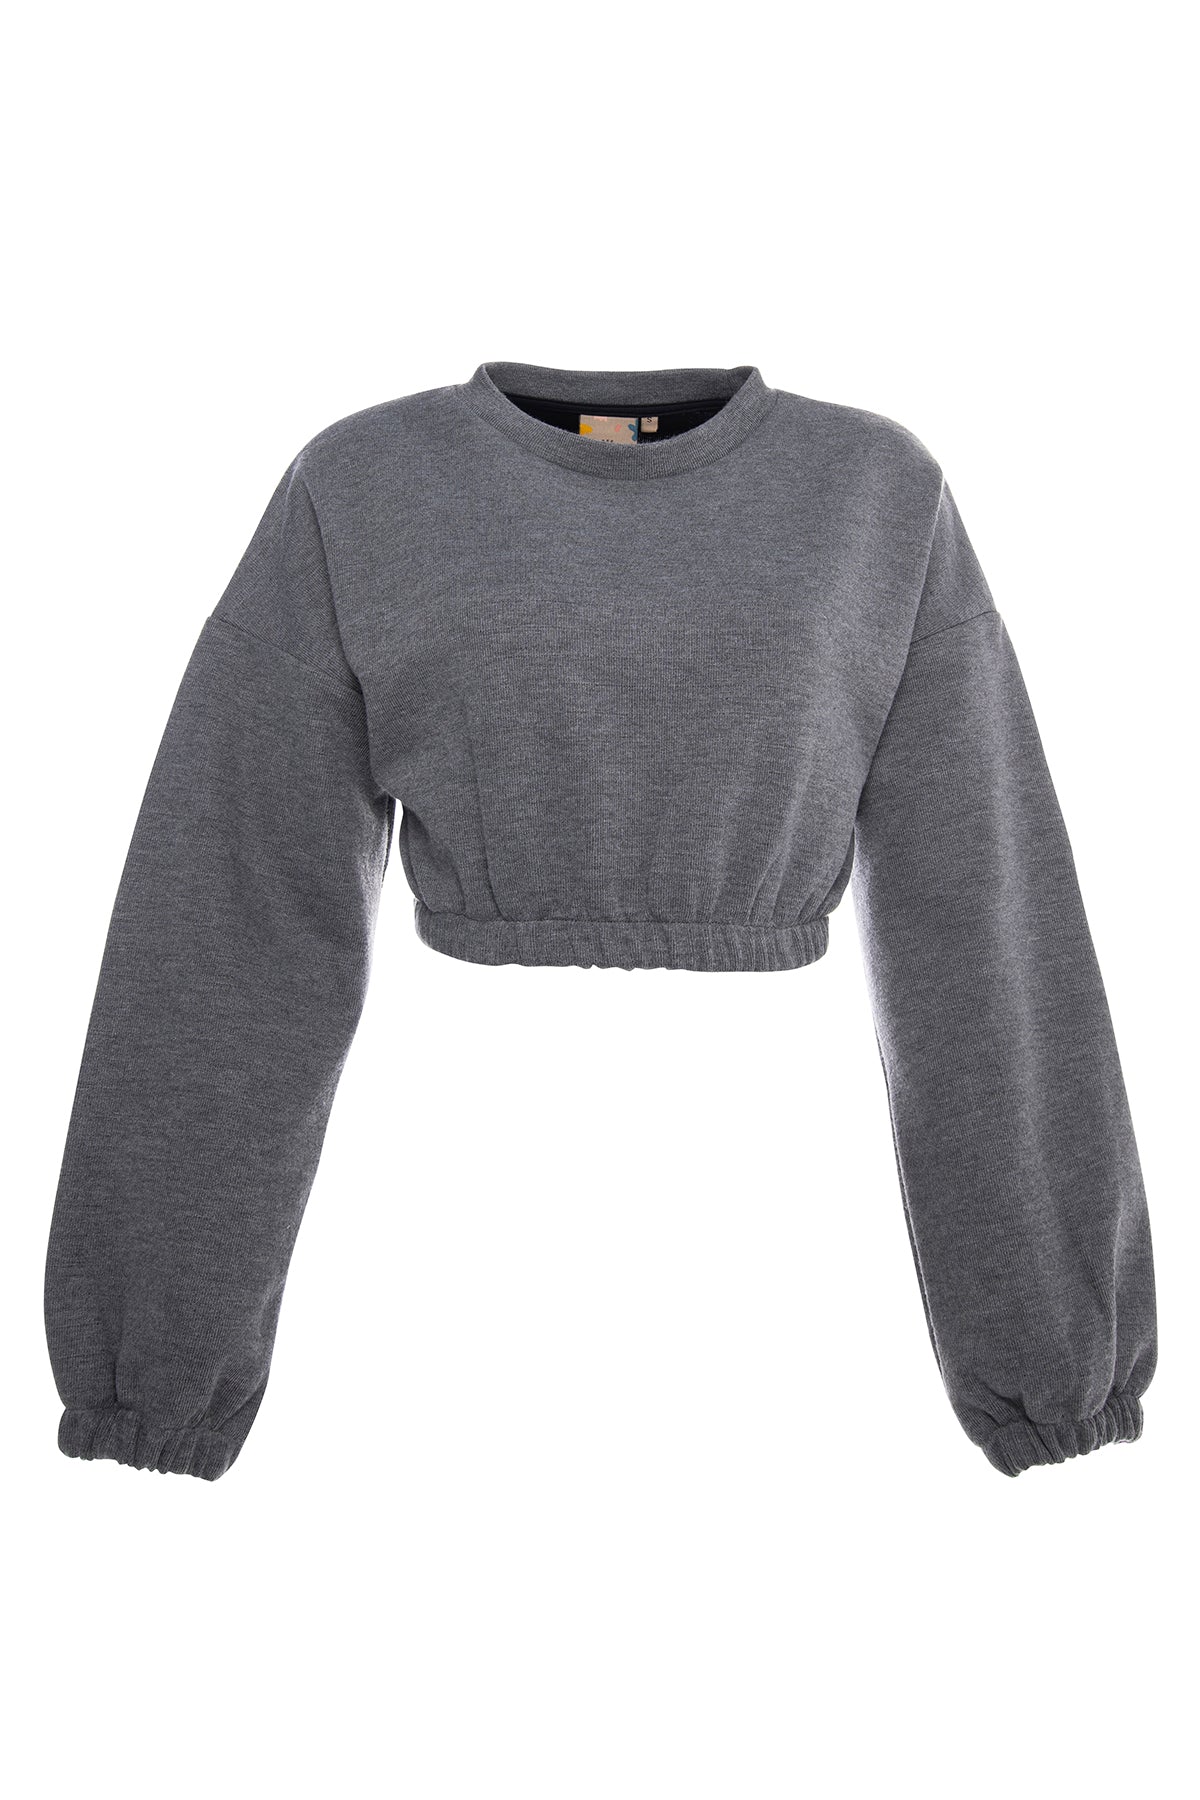 Light grey short elastic waist crop top sweatshirt.